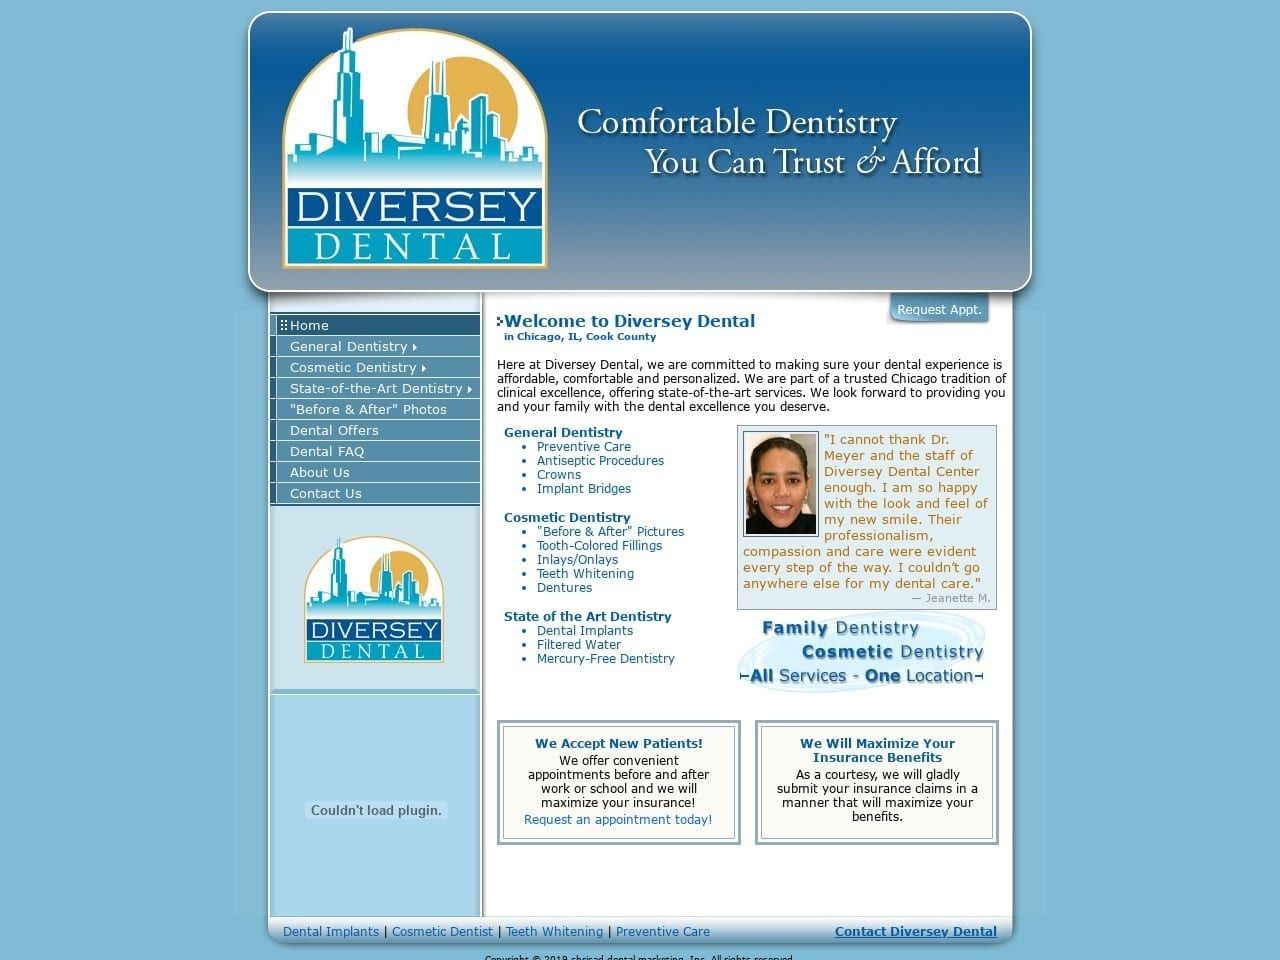 Diversey Dental Center Website Screenshot from diverseydental.com